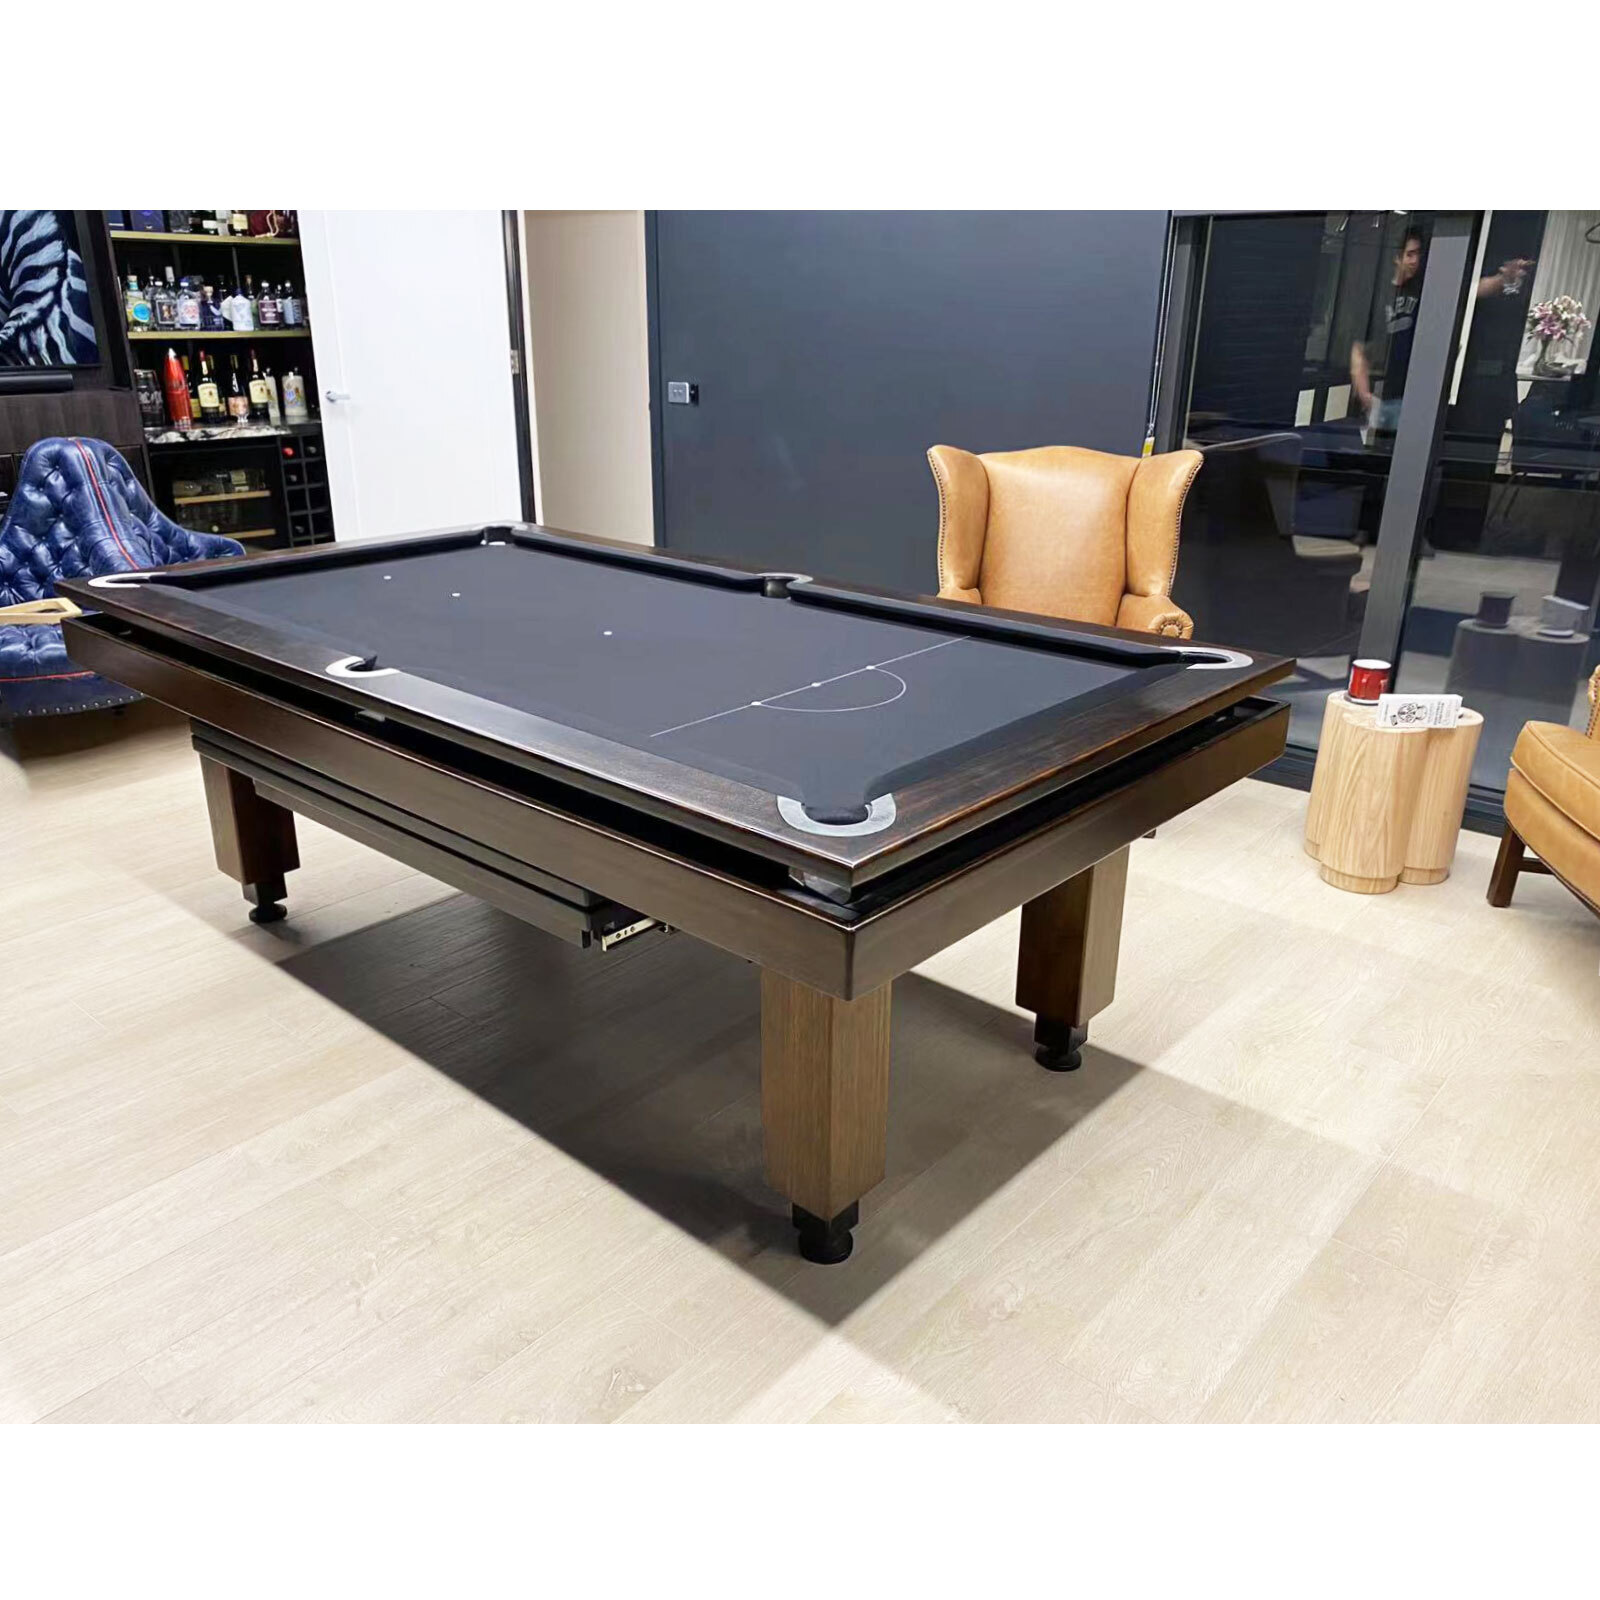 8 Foot Slate Regent Pool Billiards Table, Auto [Timber: Tassie Oak]